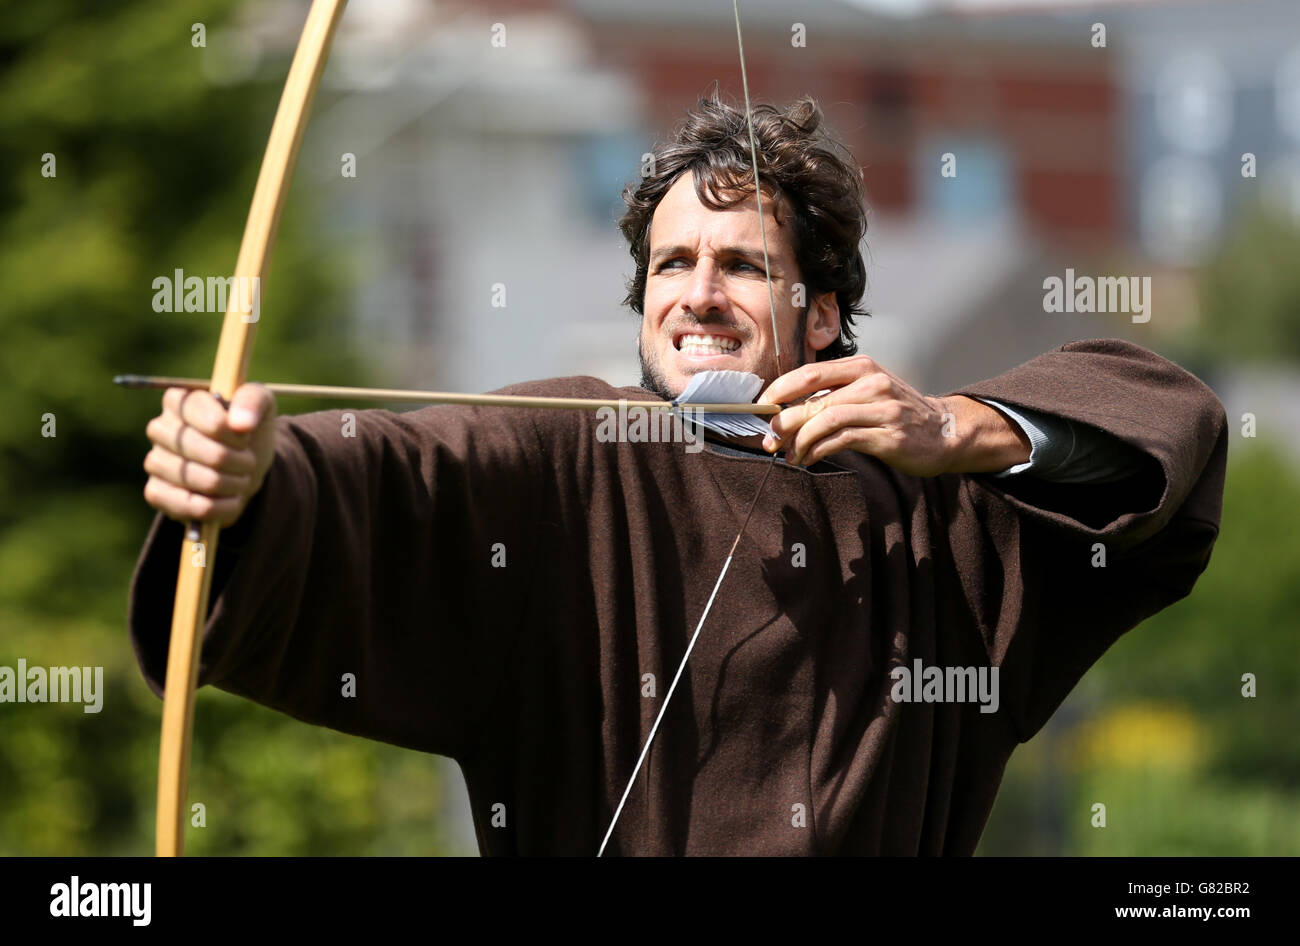 Il spagnolo Feliciano Lopez riceve una lezione di tiro con l'arco durante una fotocellula al castello di Nottingham, Nottingham. Foto Stock